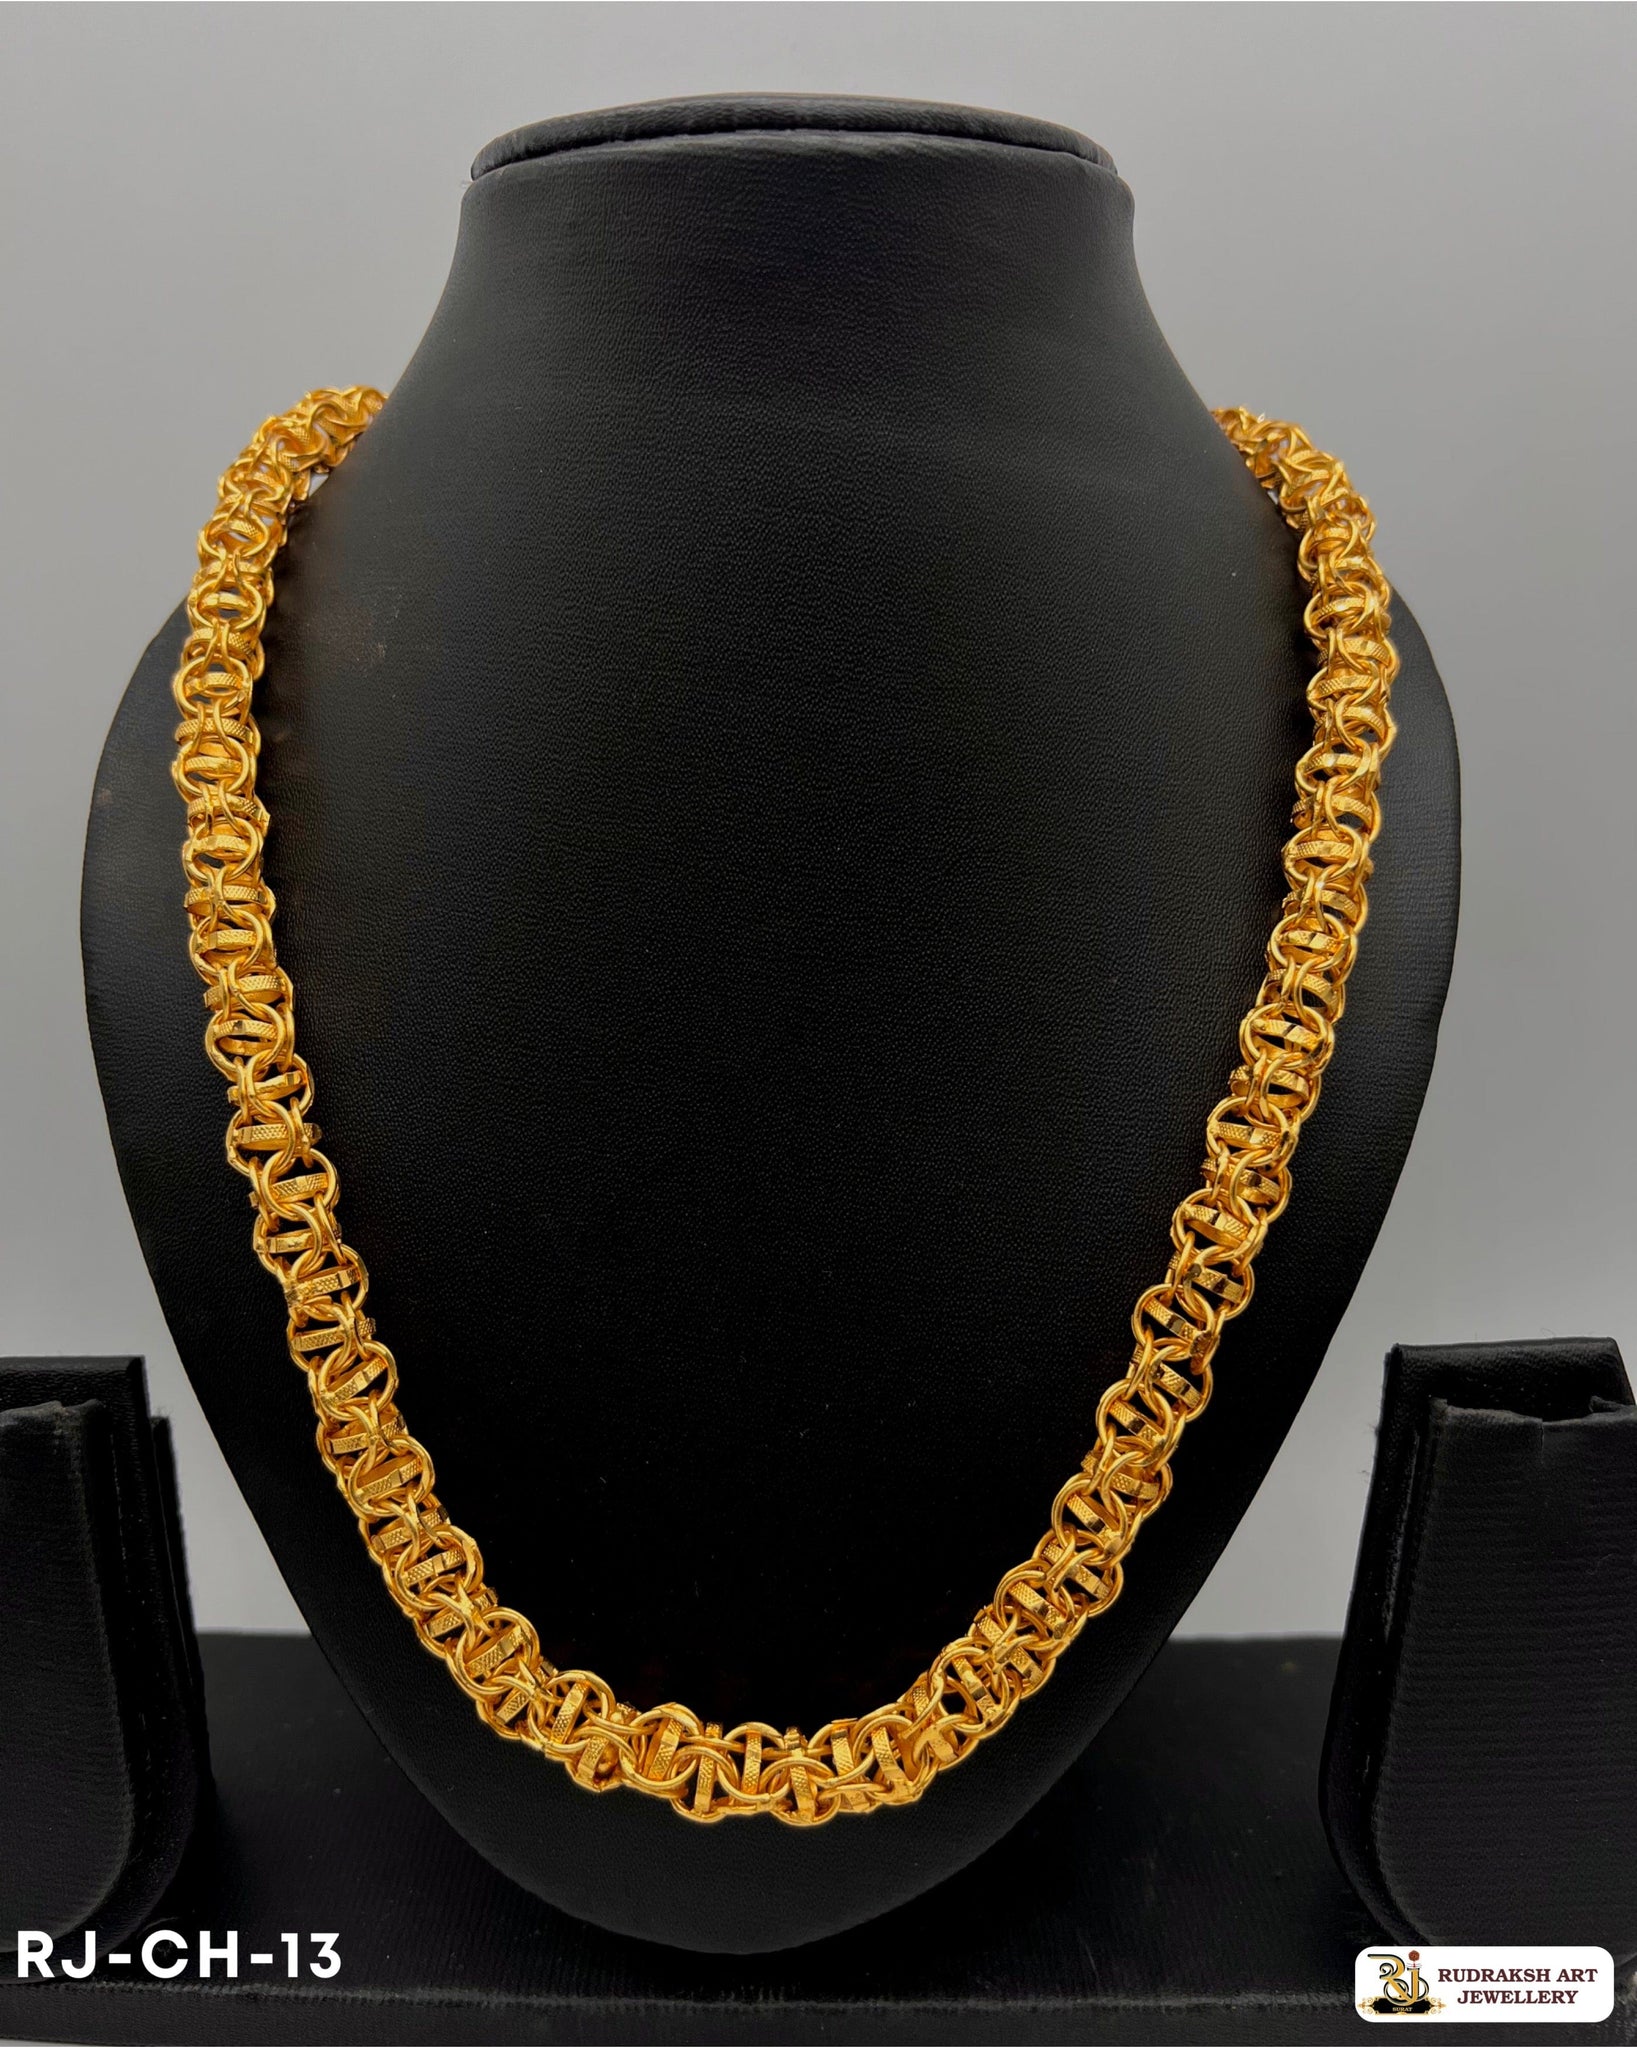 Exclusive Demanding of Round Kadi Chain for Men Rudraksh Art Jewellery